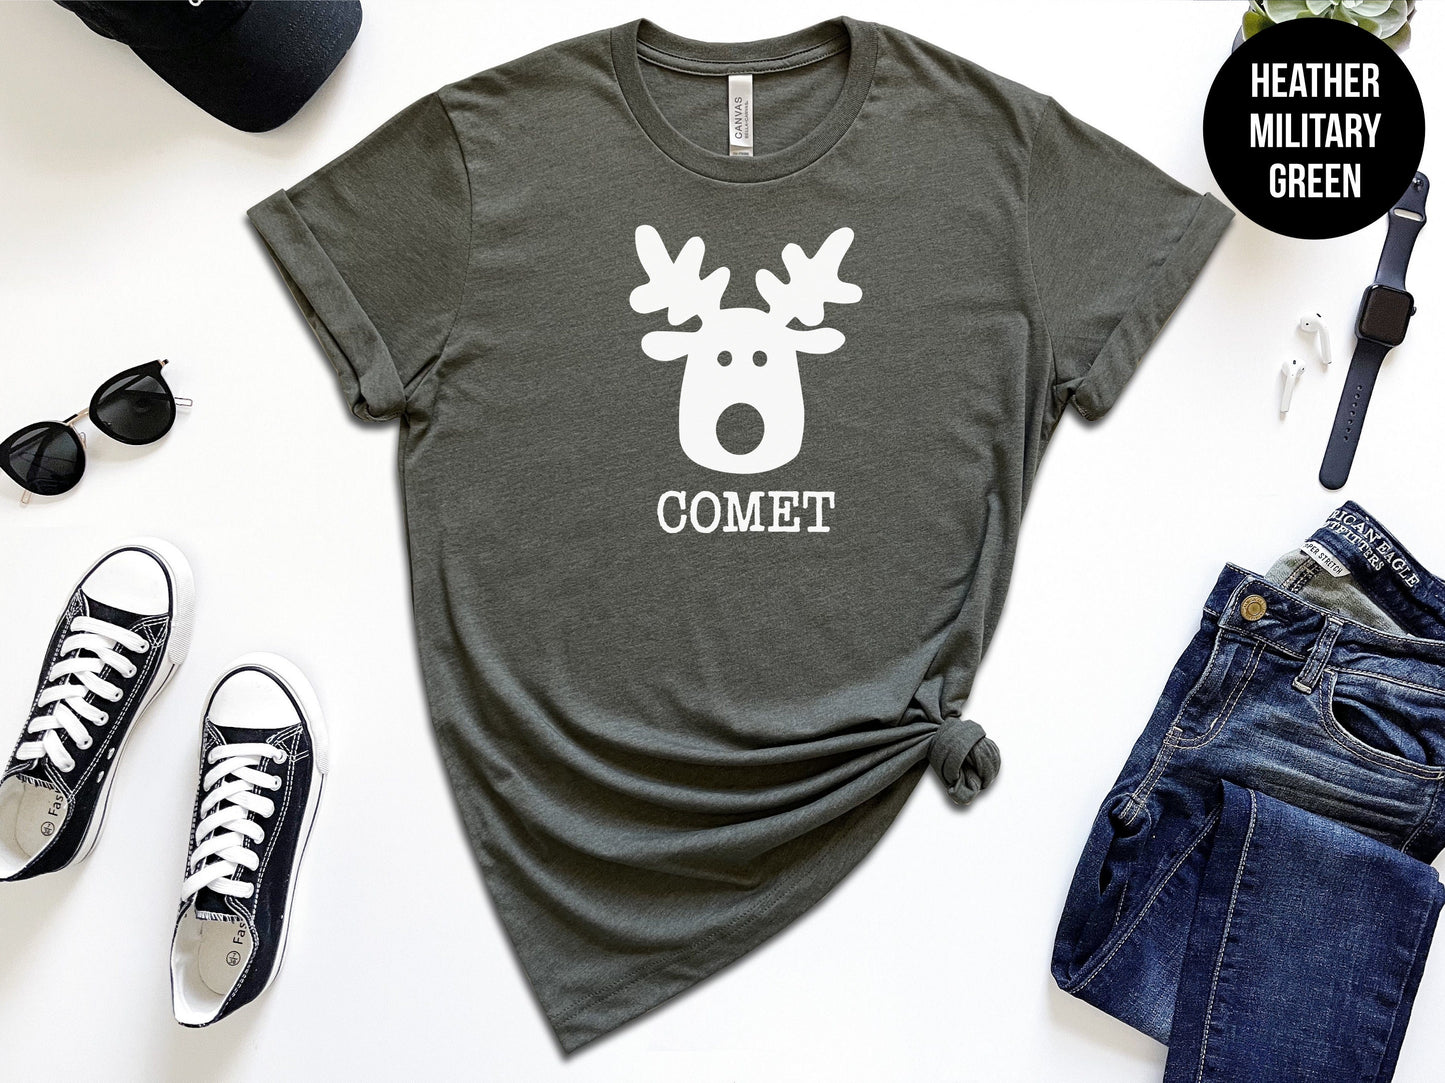 Customizable Reindeer Name Shirts